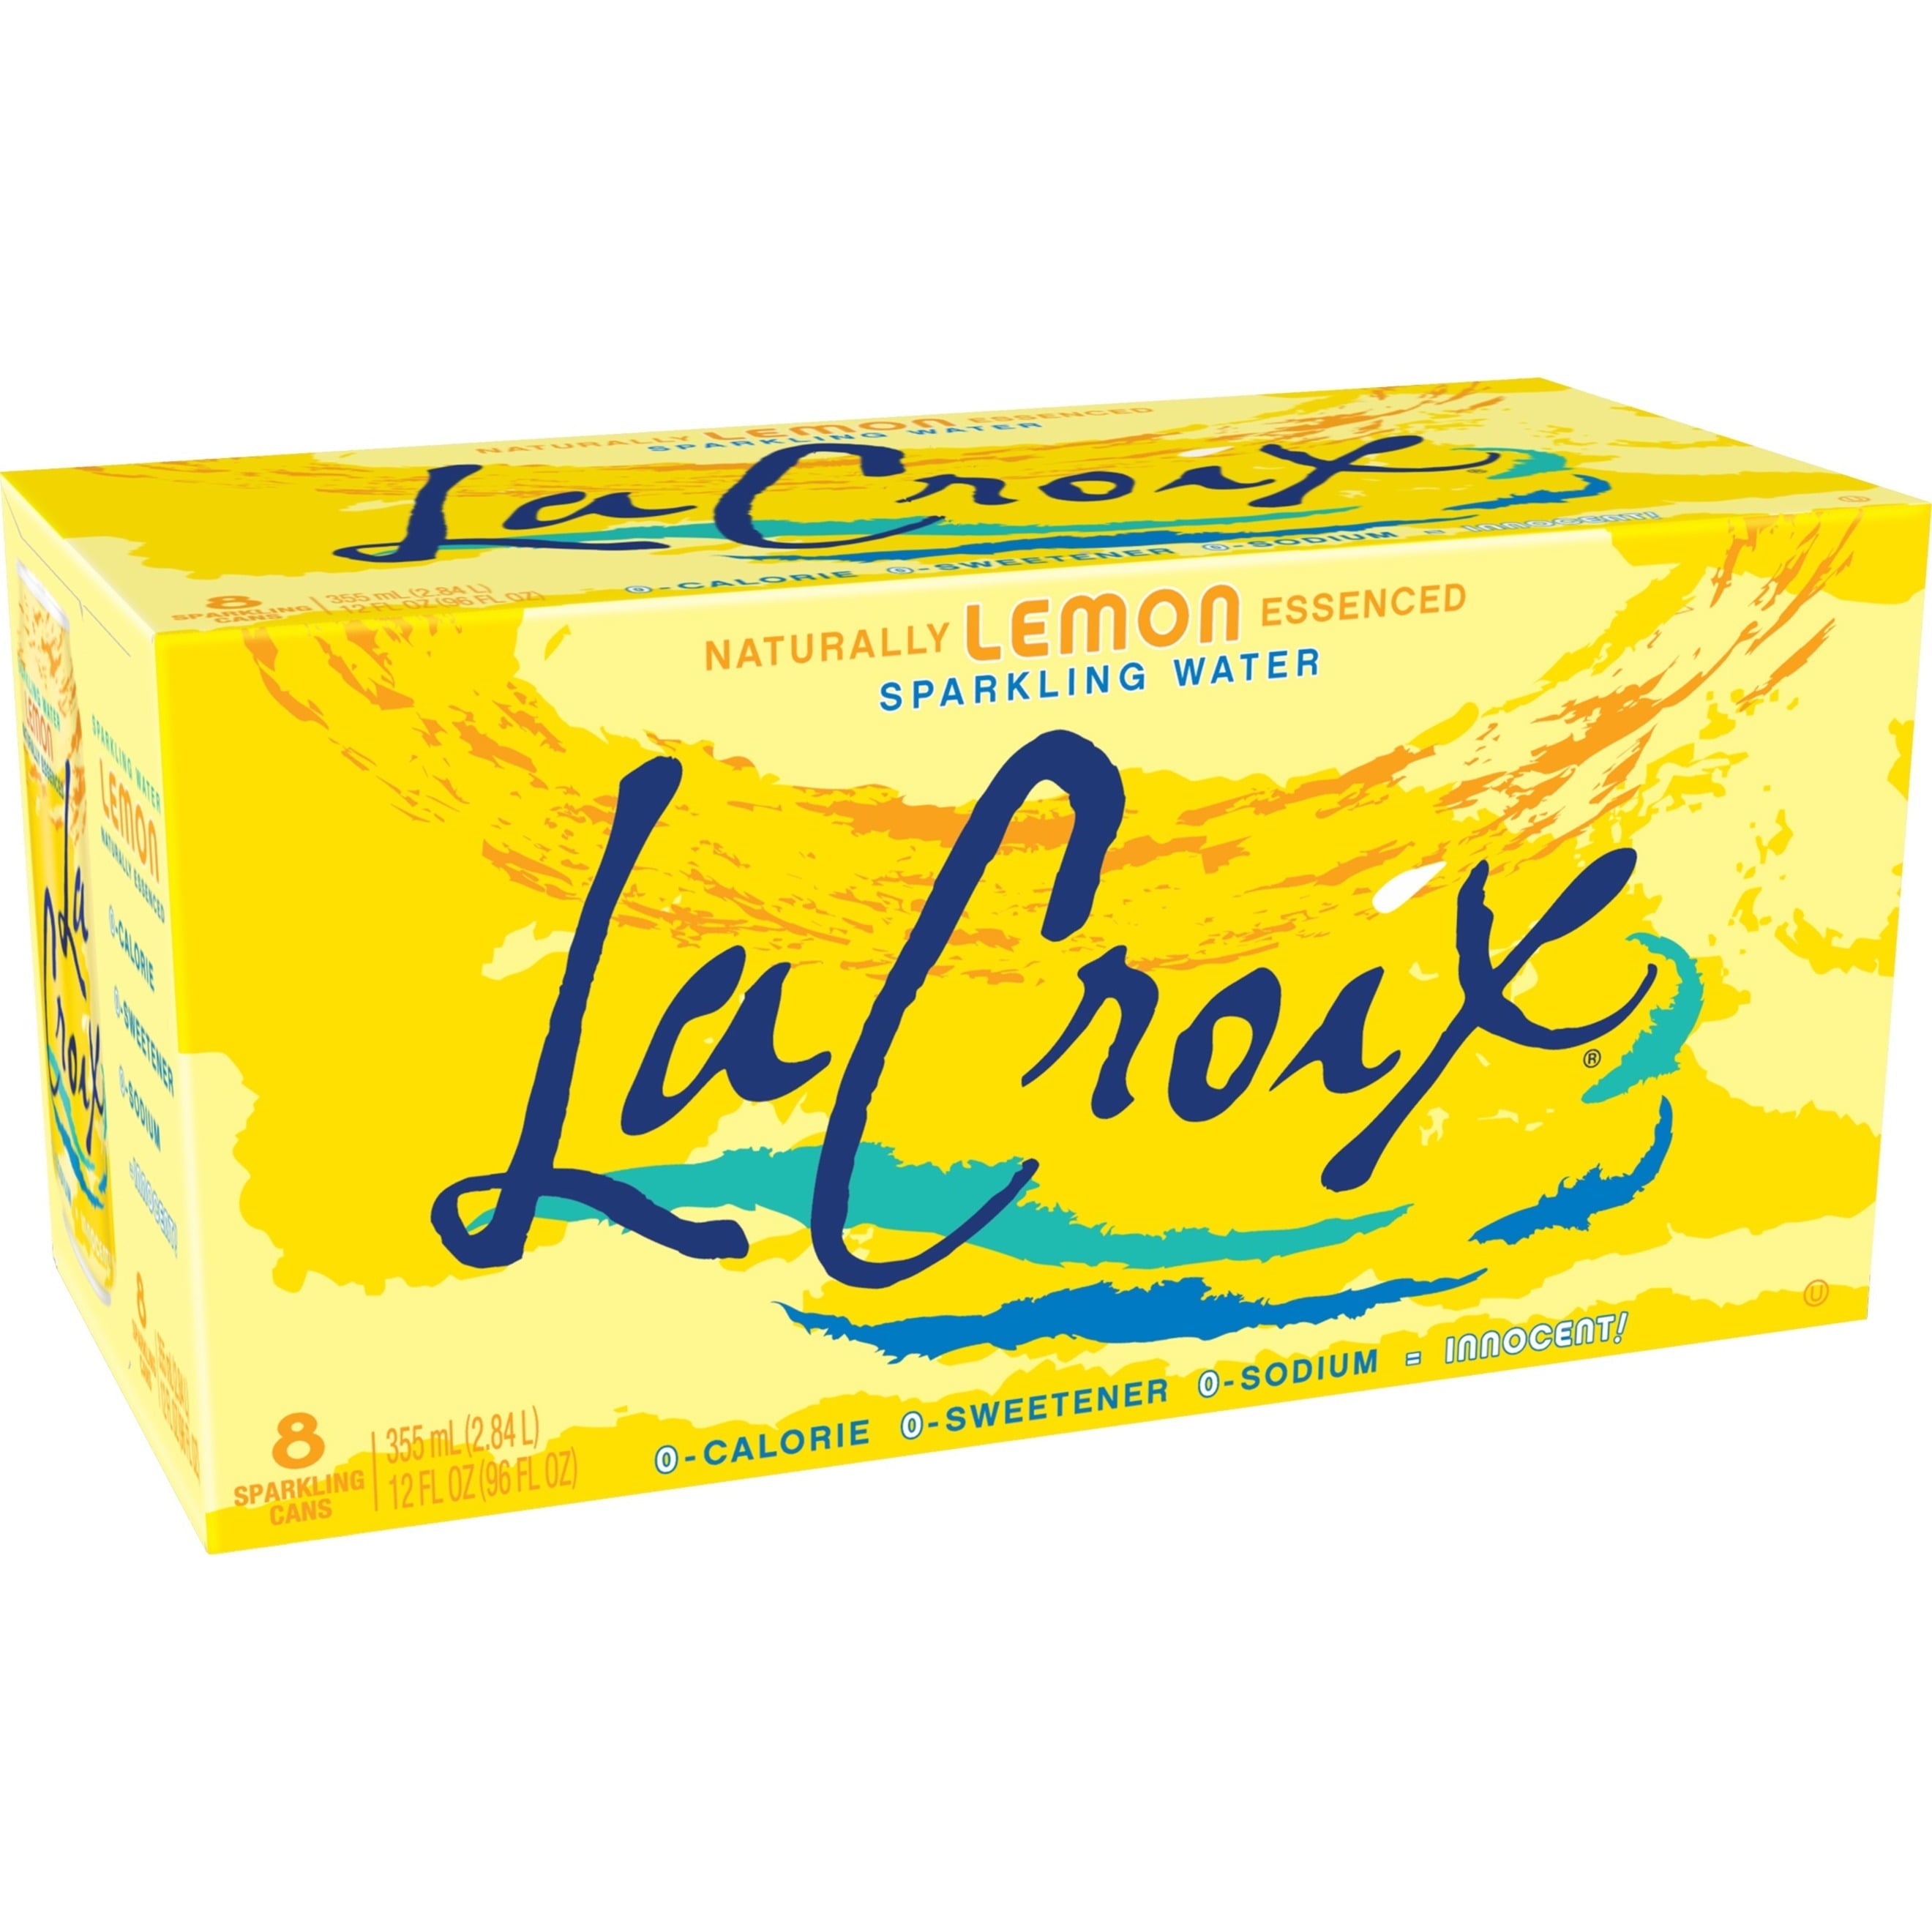 La Croix Lemon Sparkling Water 8 oz Can